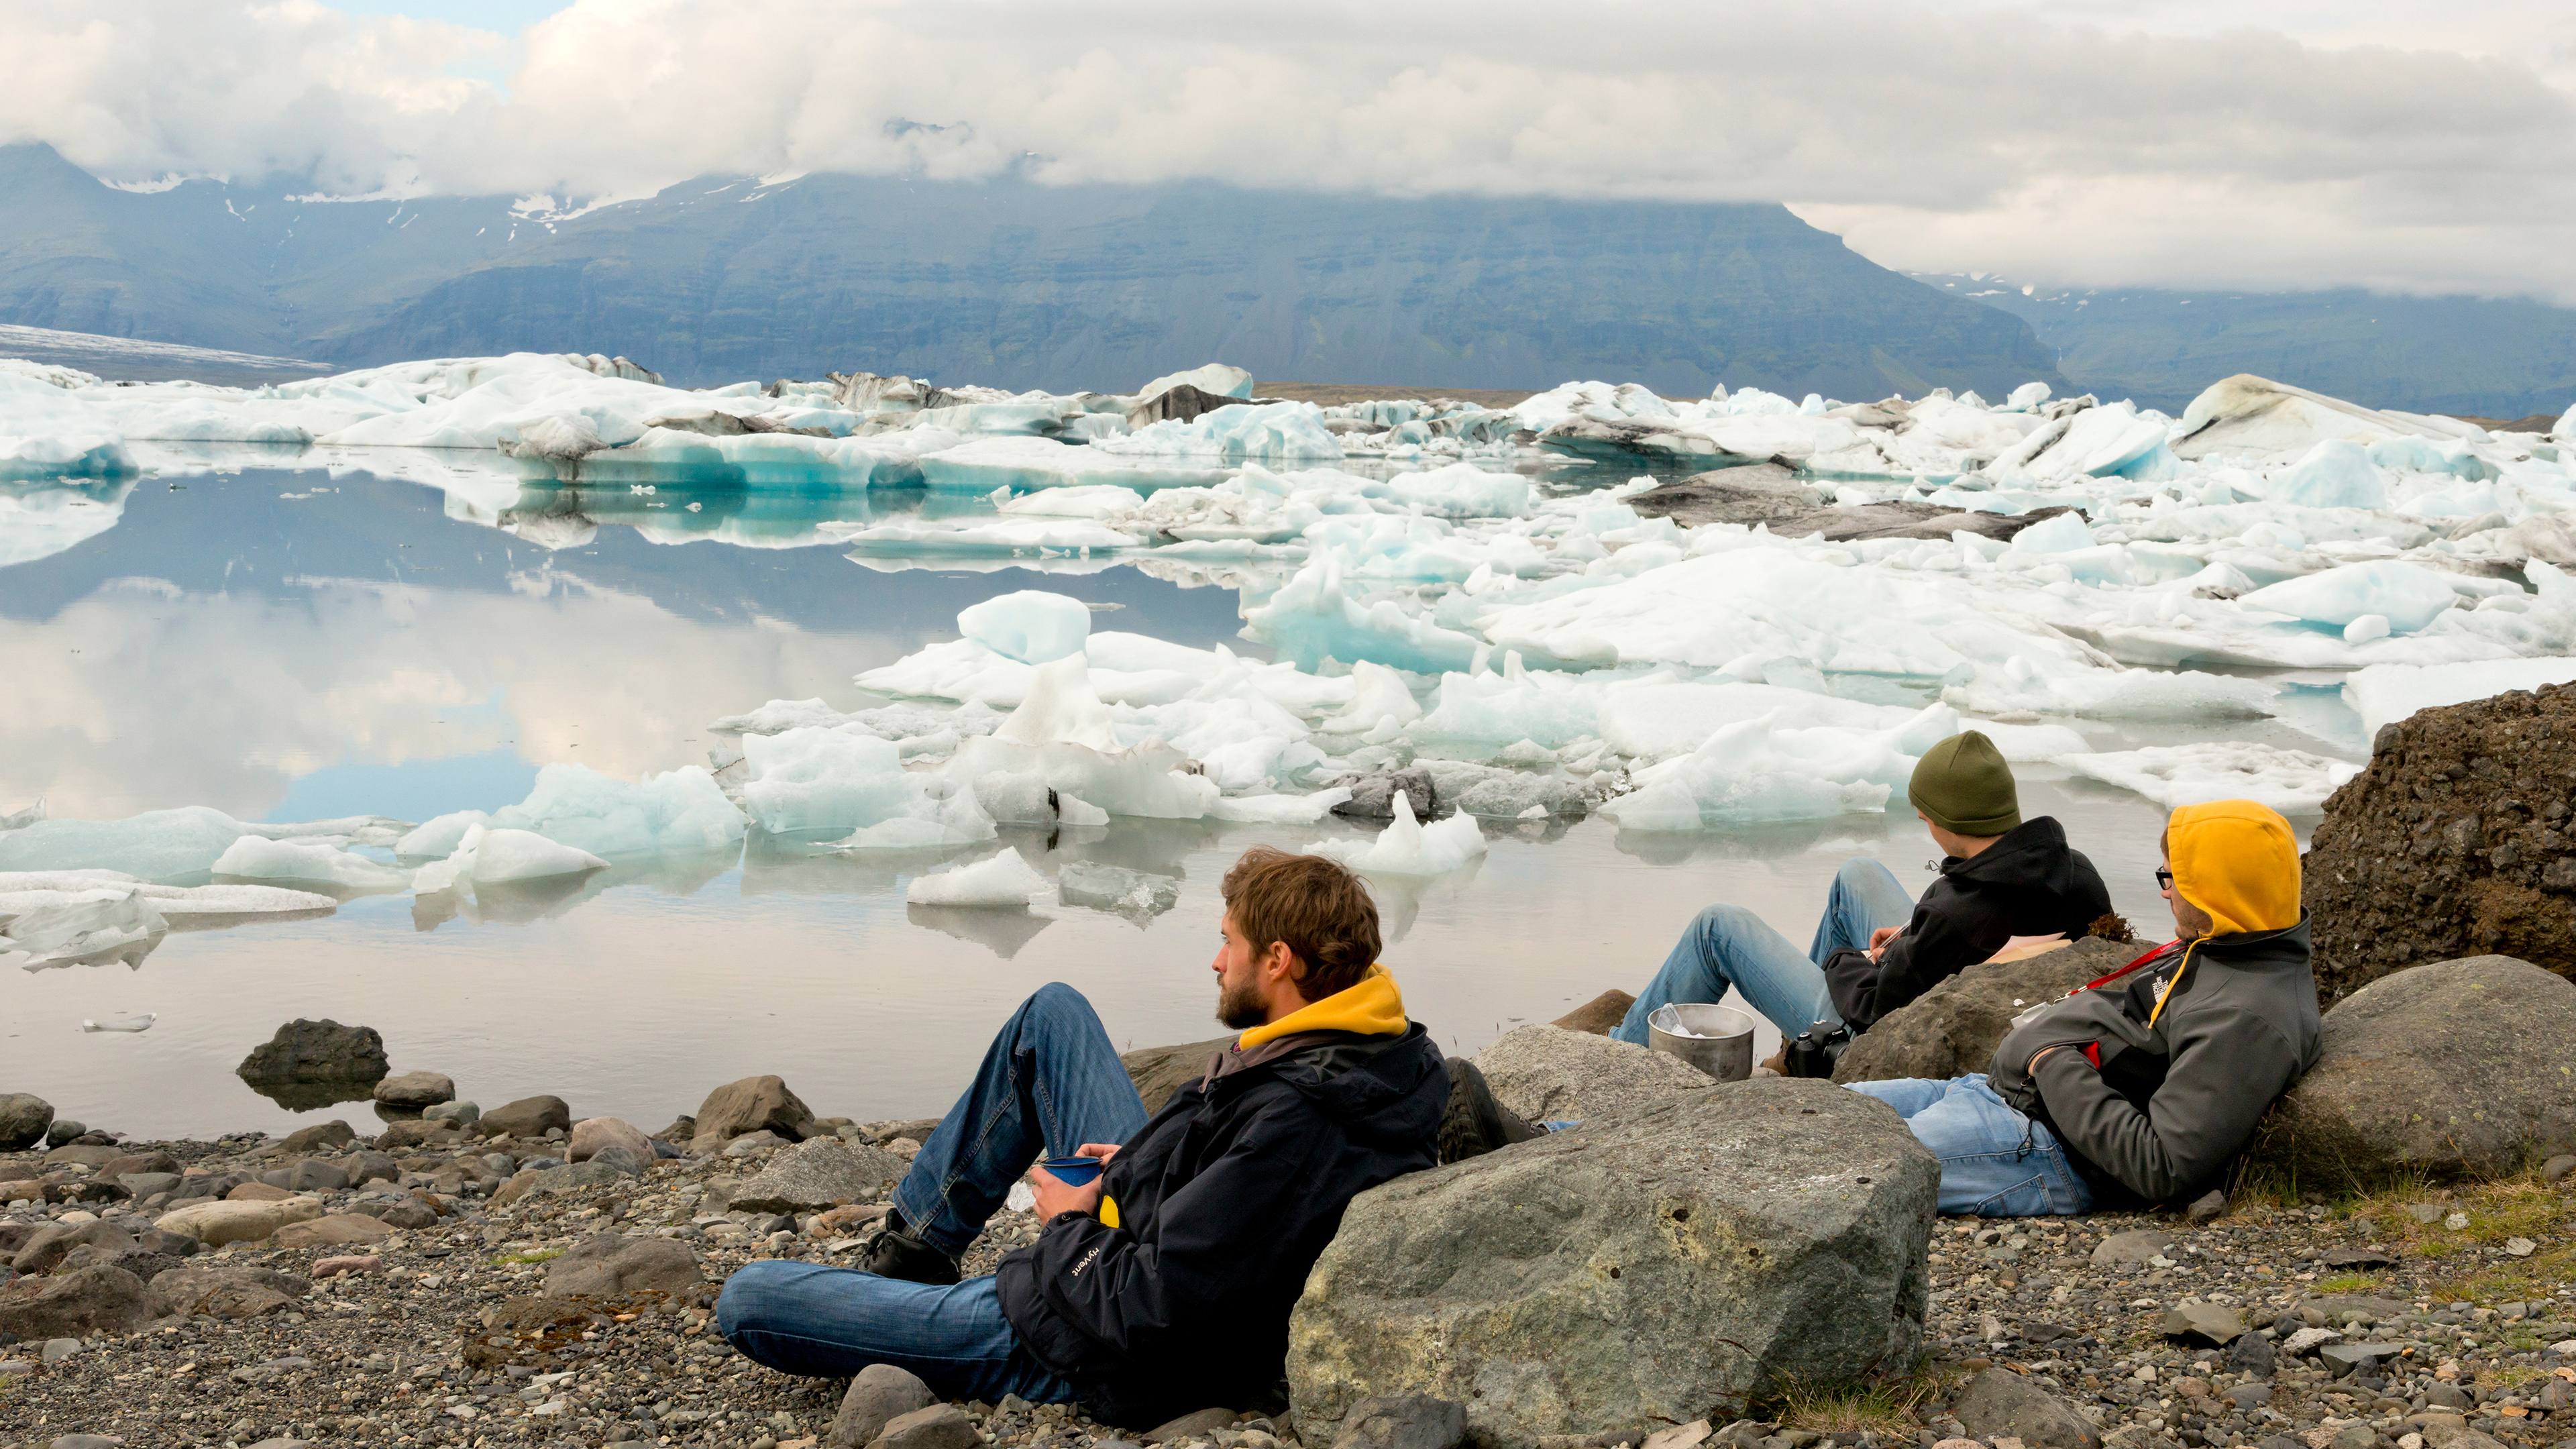 Reisende an der Gletscherlagune Jökulsarlon in Island